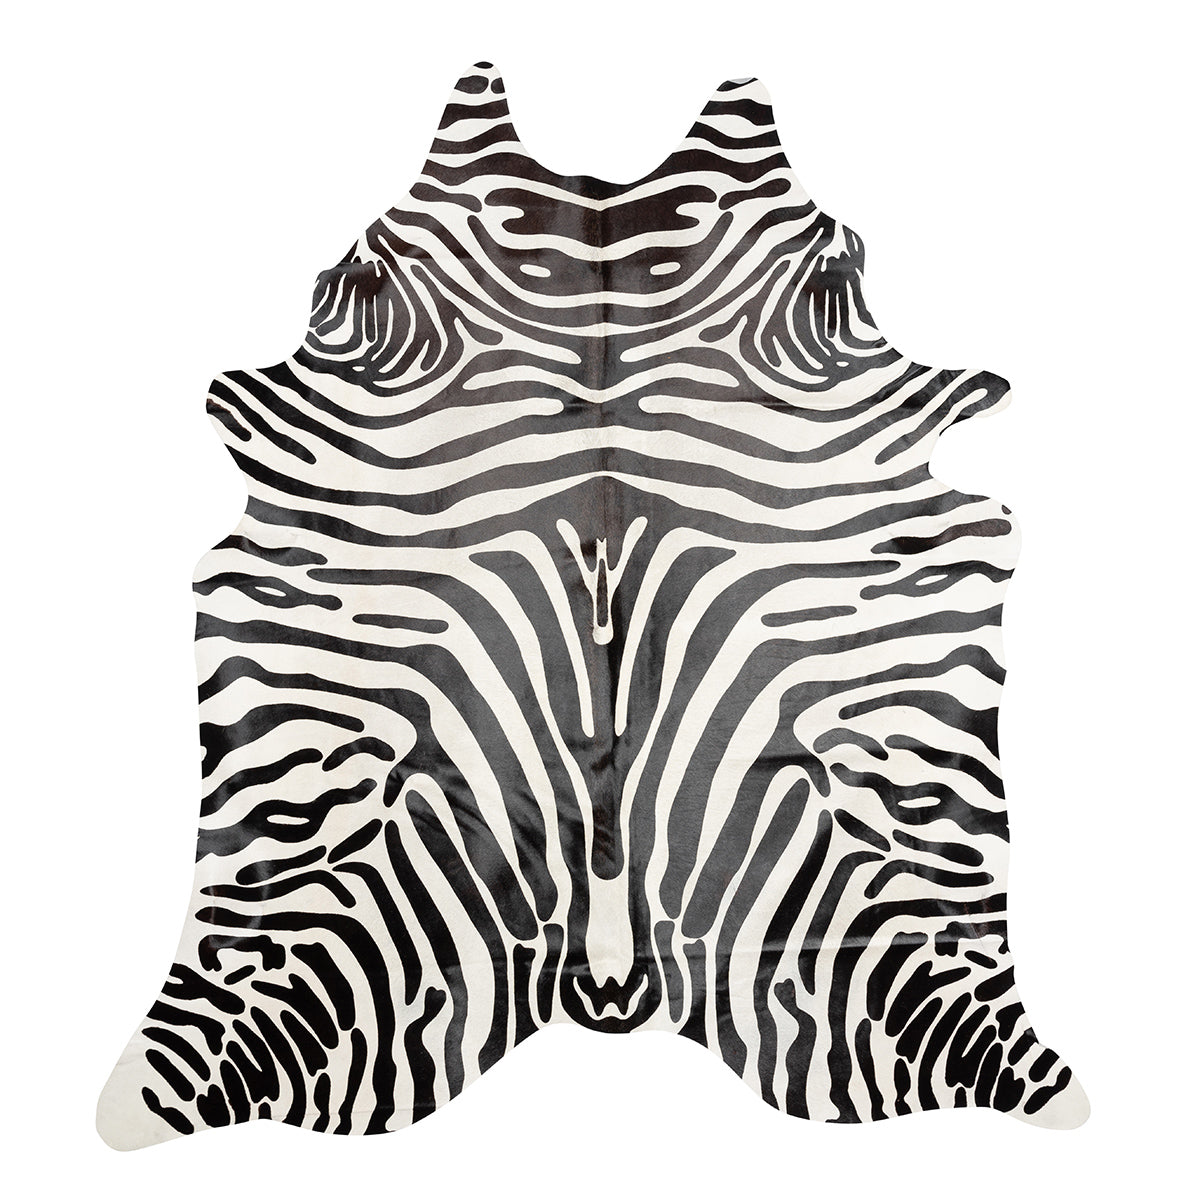 Upholstery Zebra Print Black on White